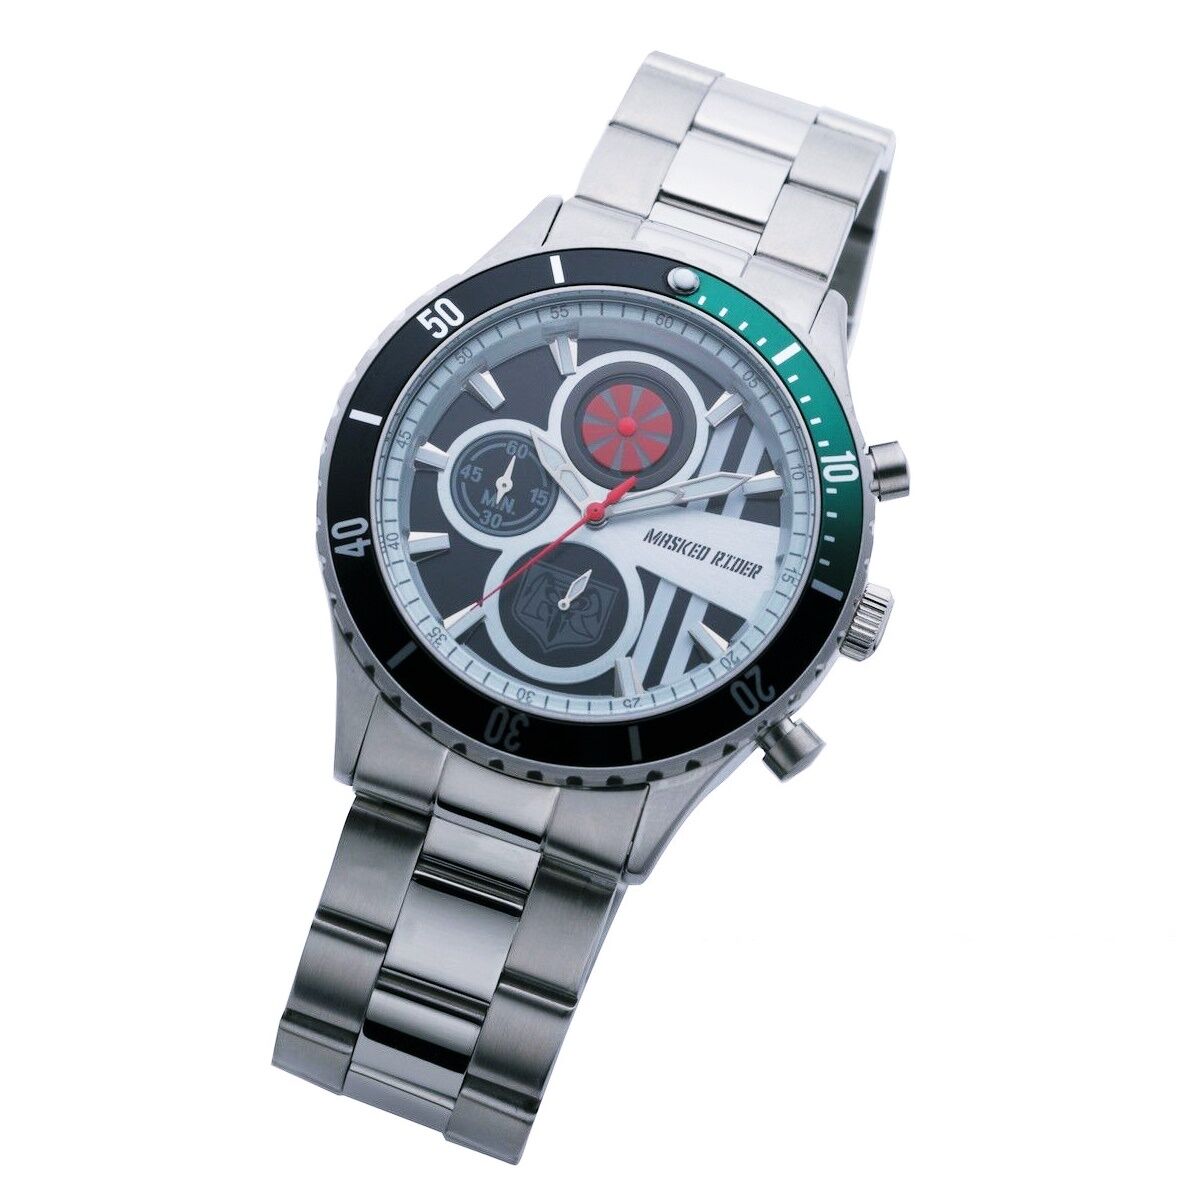 仮面ライダー1号 クロノグラフ 腕時計【Live Action Watch】 | 仮面 